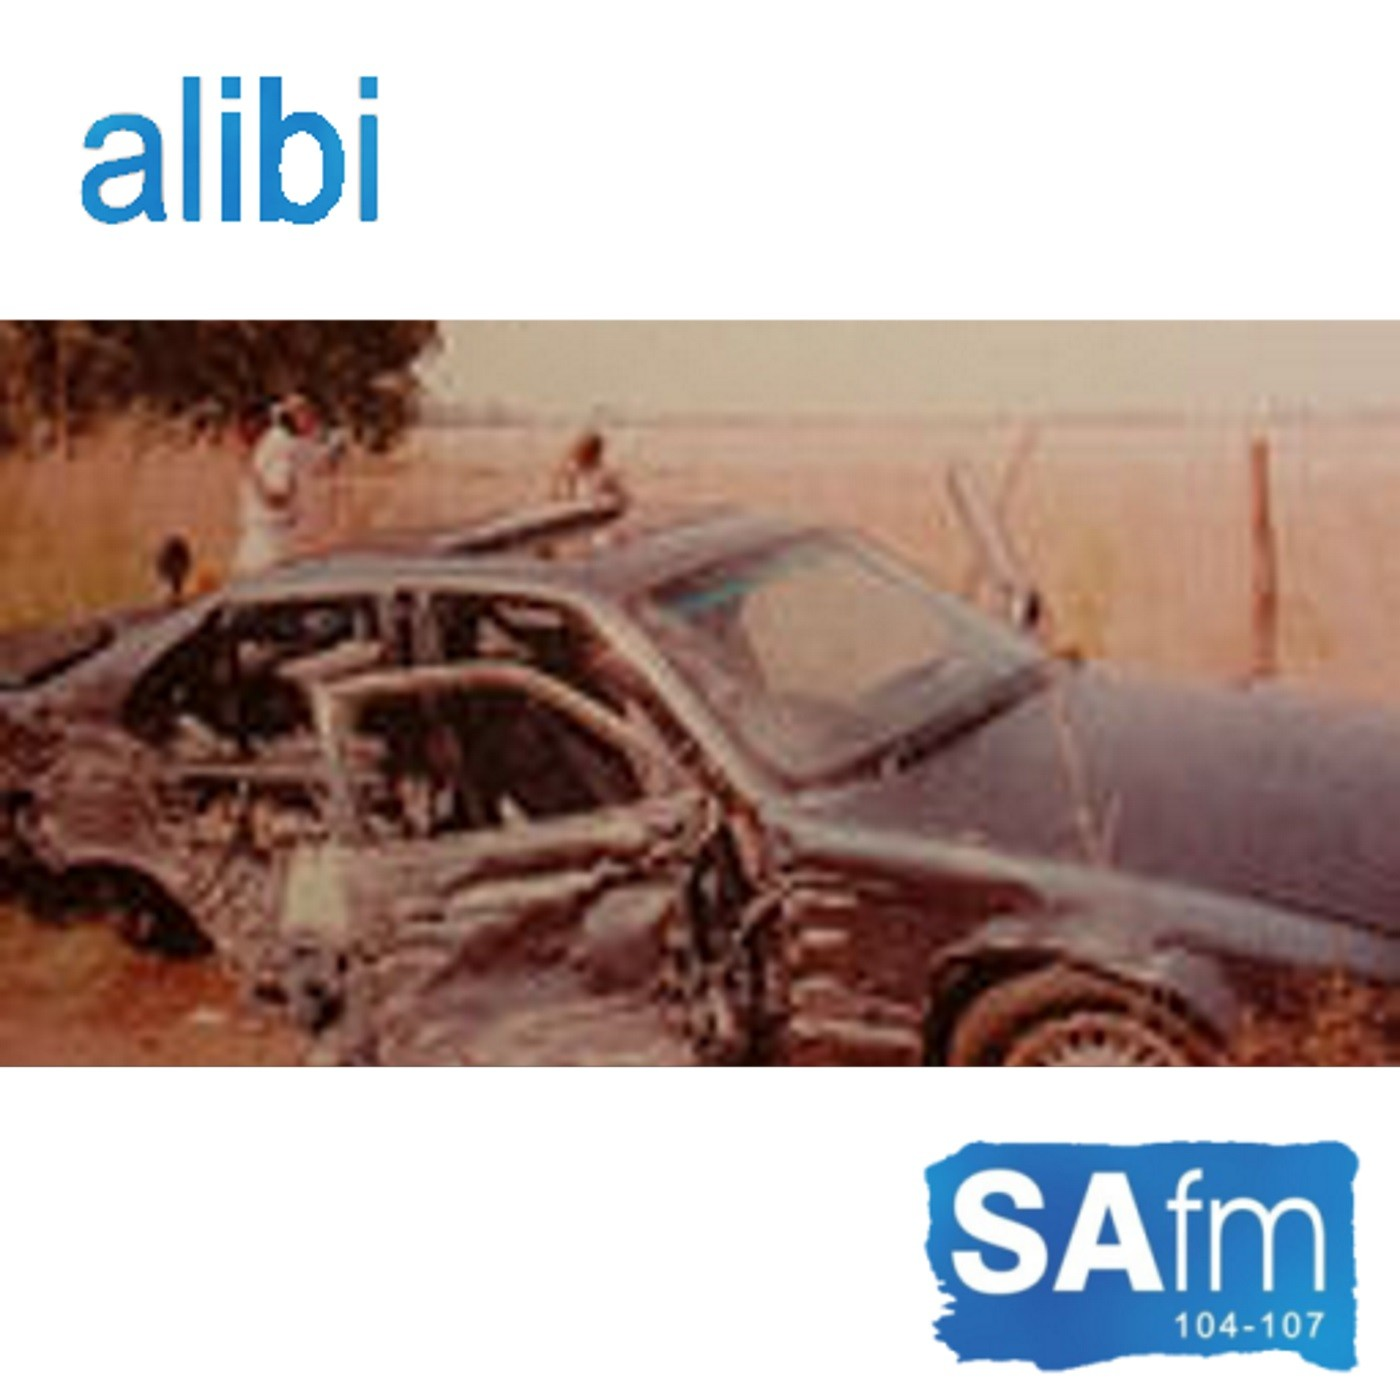 Alibi radio series - Episode 7